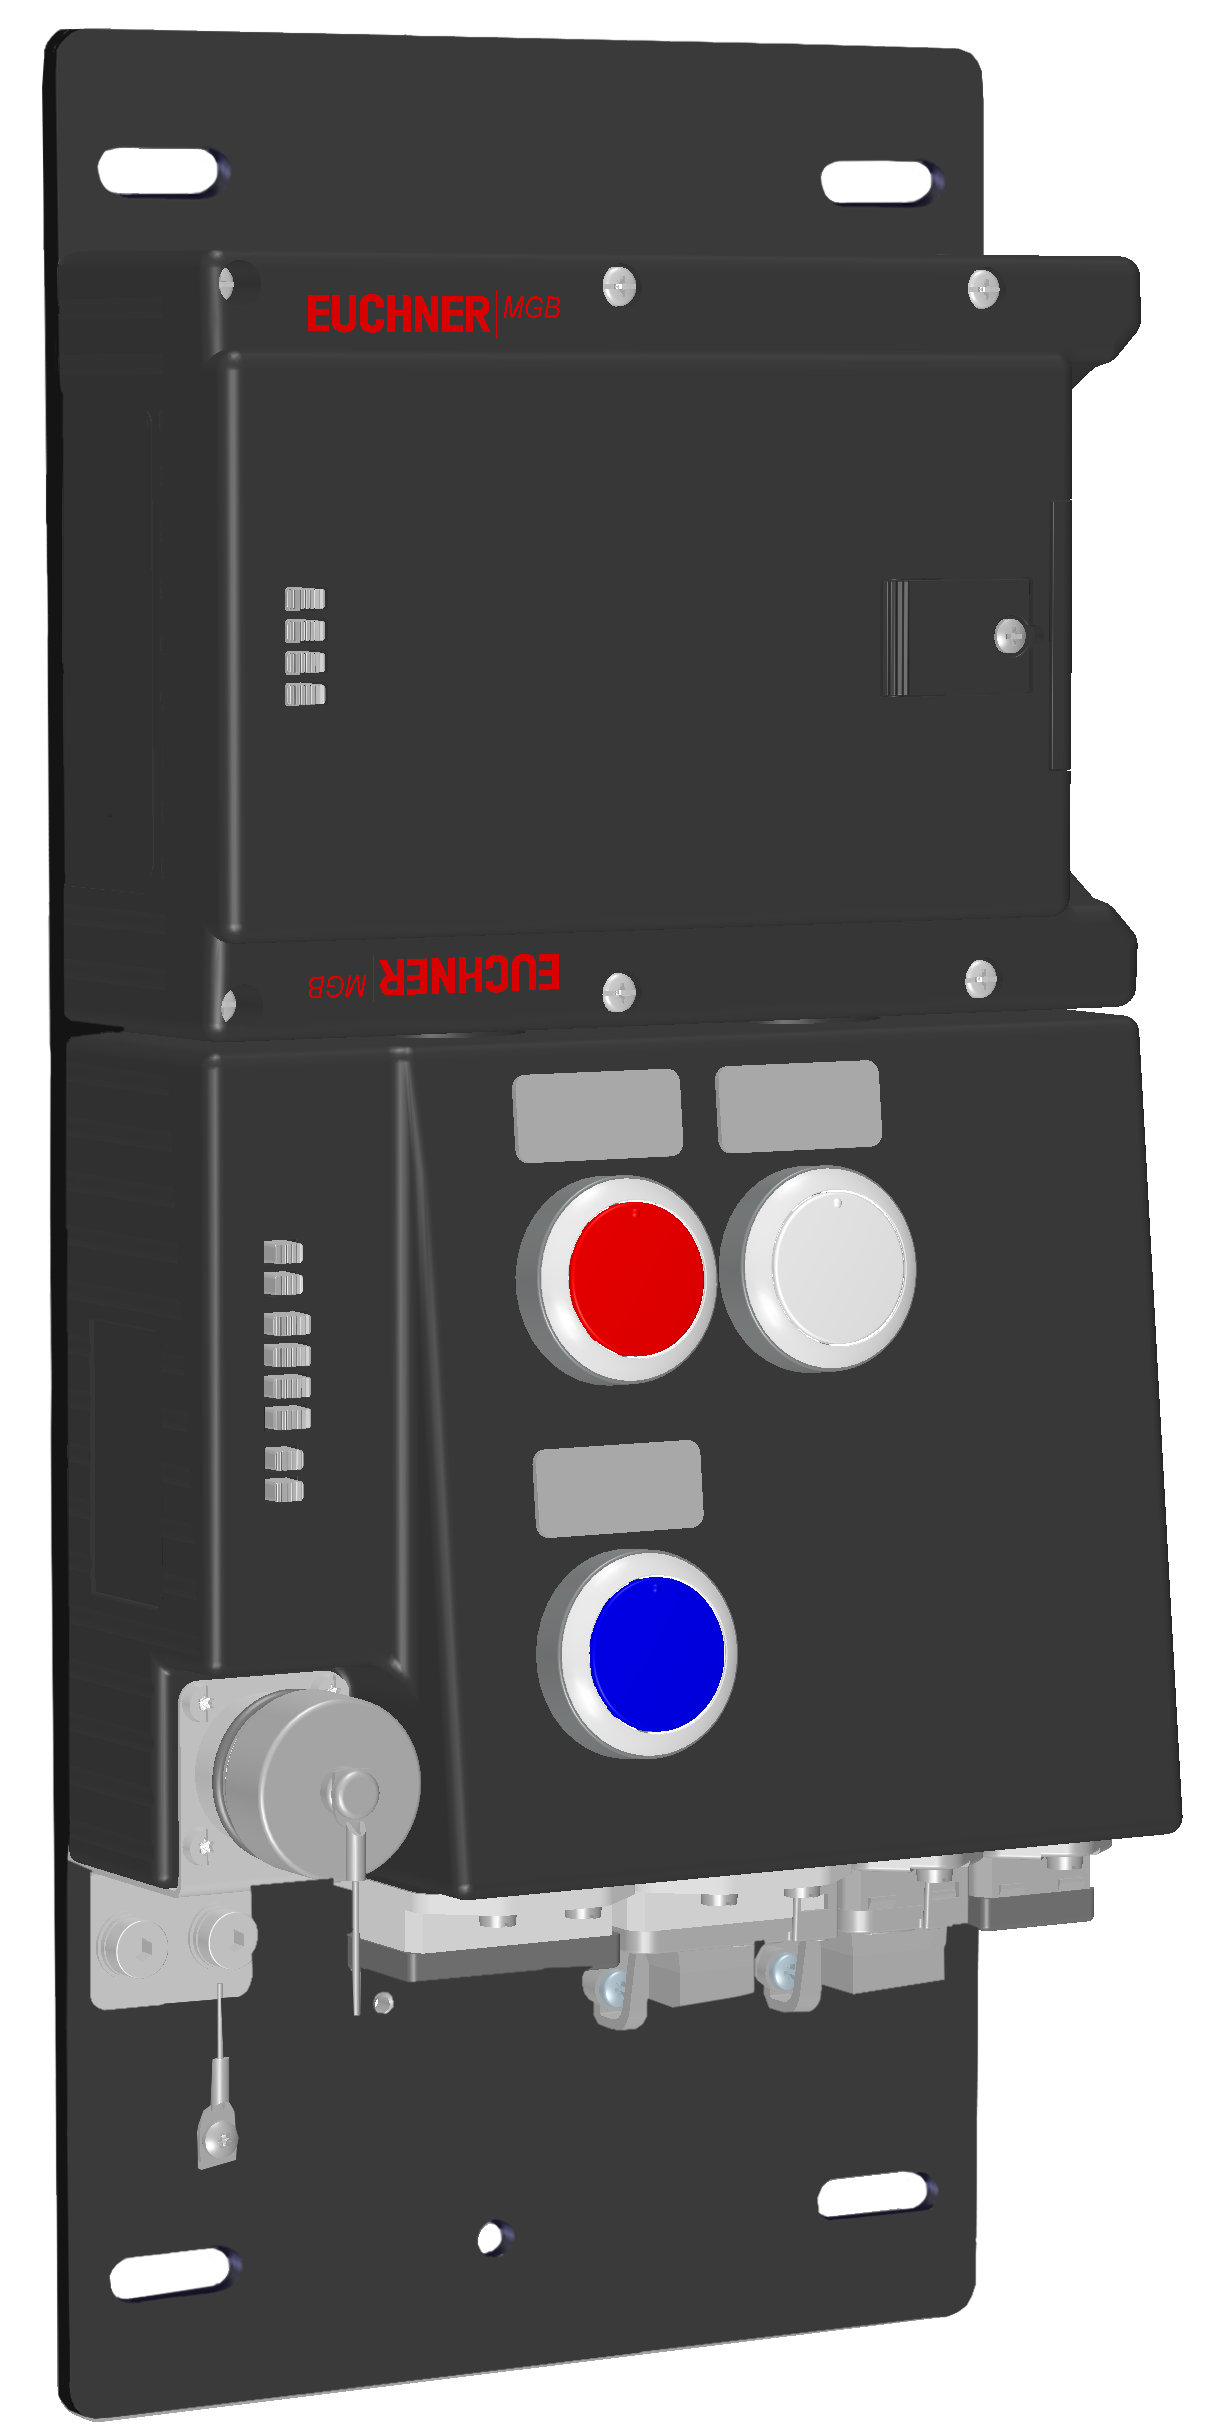 Vyhodnocovací moduly s jištěním ochranného krytu MGB-L1B-PNC-R-115136  (Obj. č. 115136)